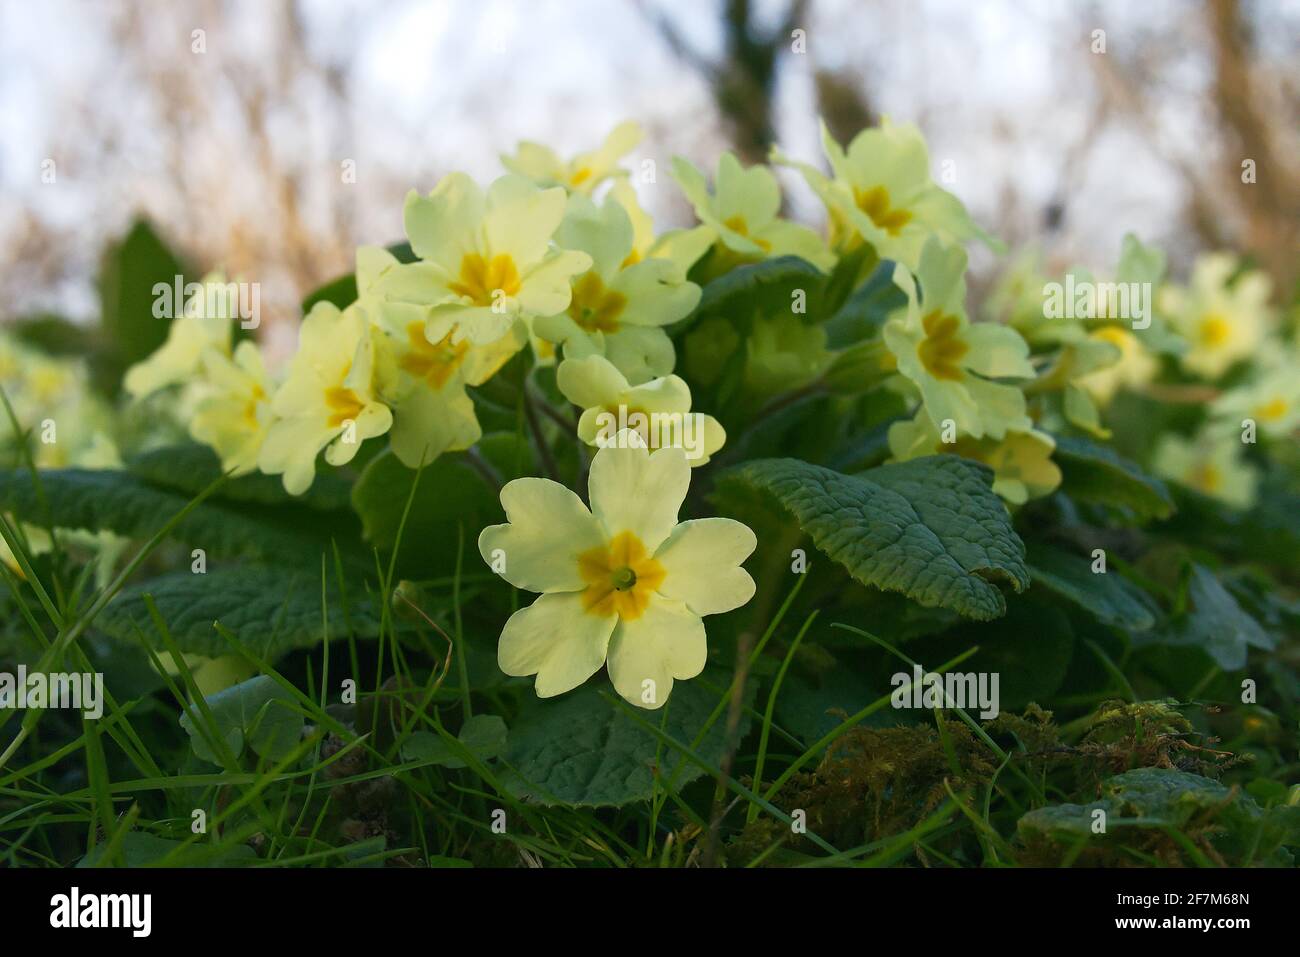 Primrosiers sauvages, primula vulgaris, poussant dans les bois - tôt le matin, printemps dans le Bedfordshire, Angleterre, Royaume-Uni Banque D'Images